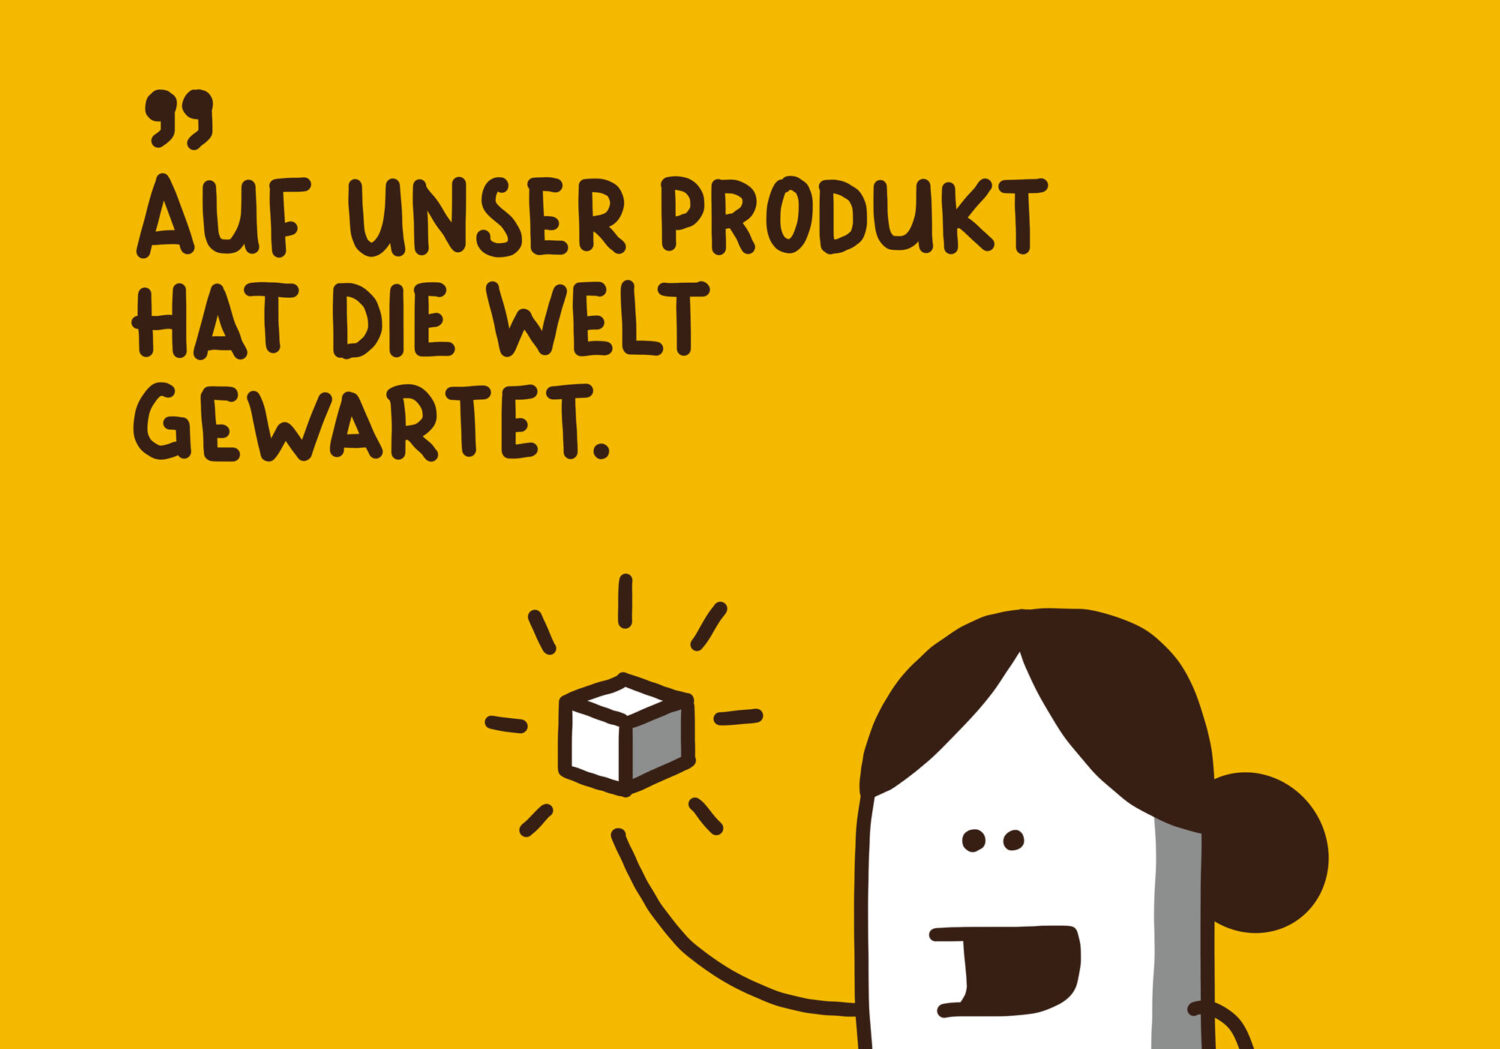 UX_Herr_Buerli_Produktitis